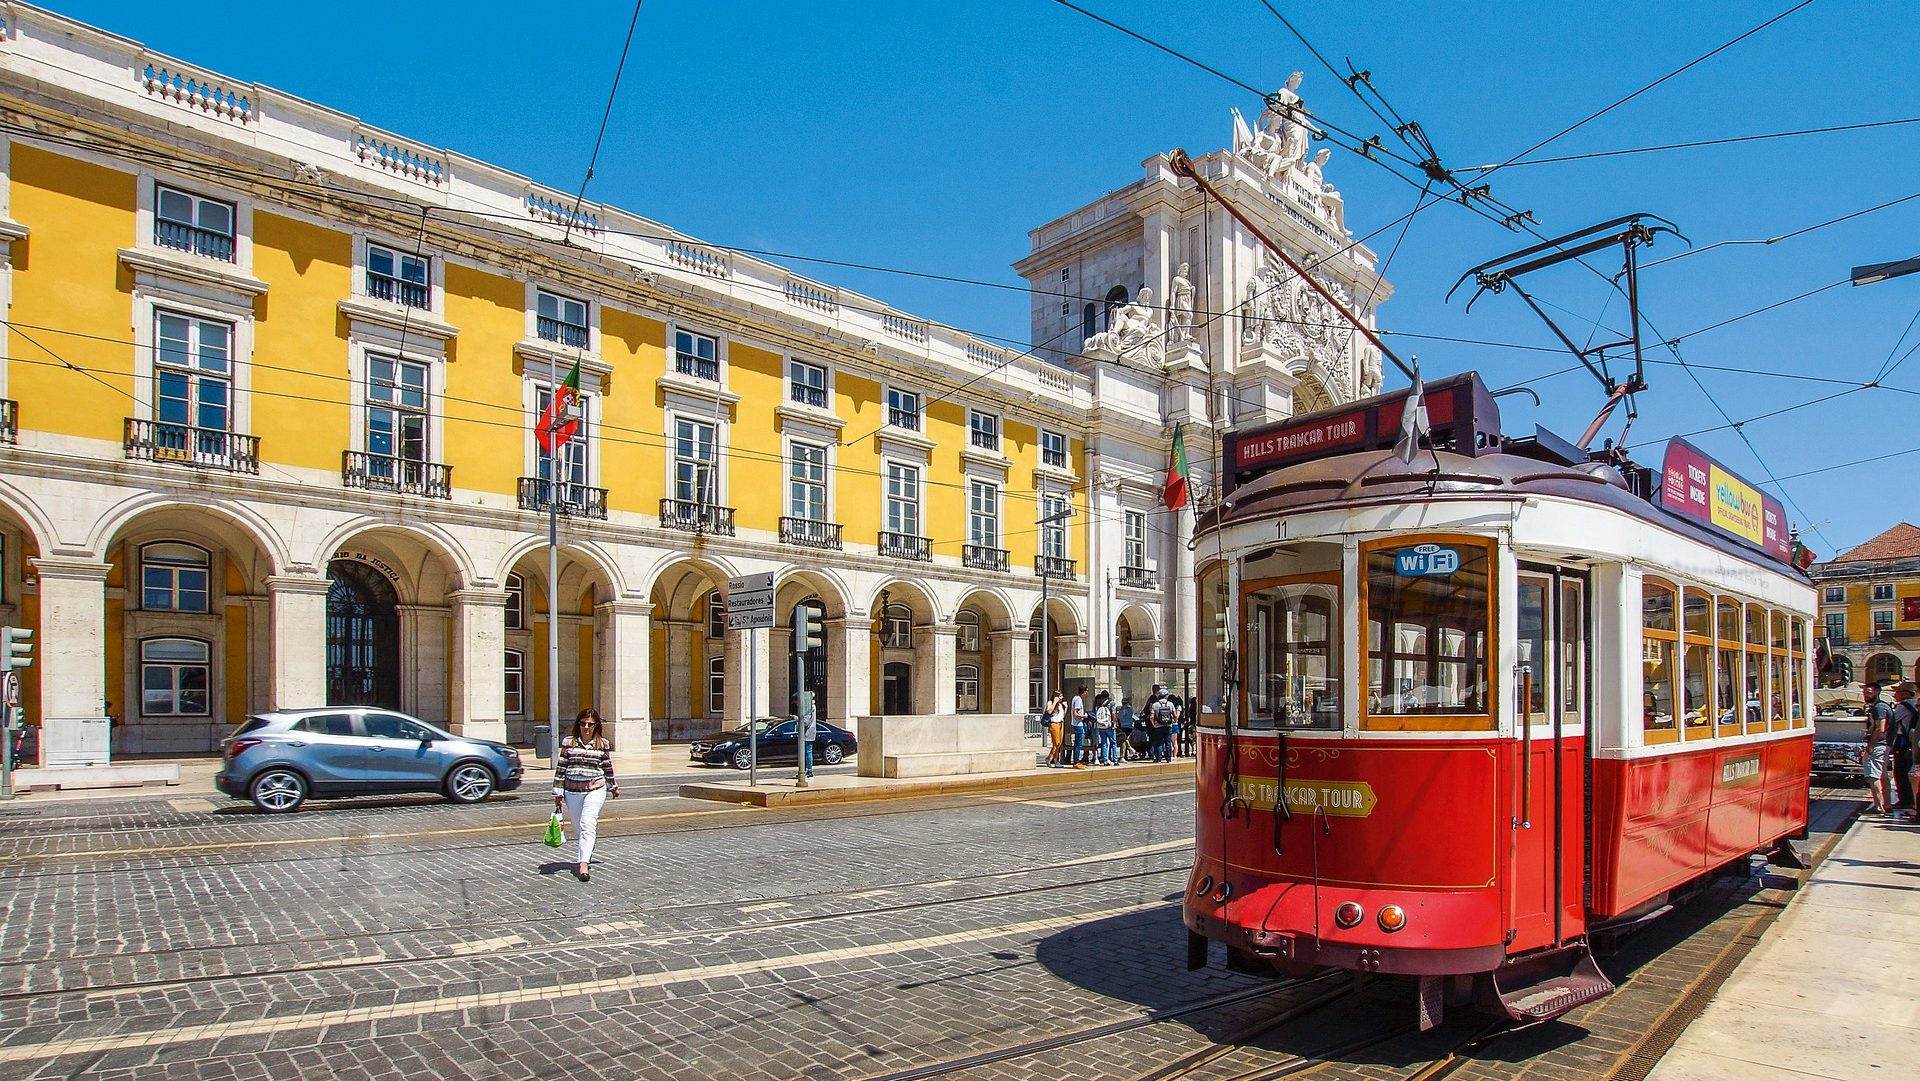 Mejores páginas web para encontrar trabajo en Portugal